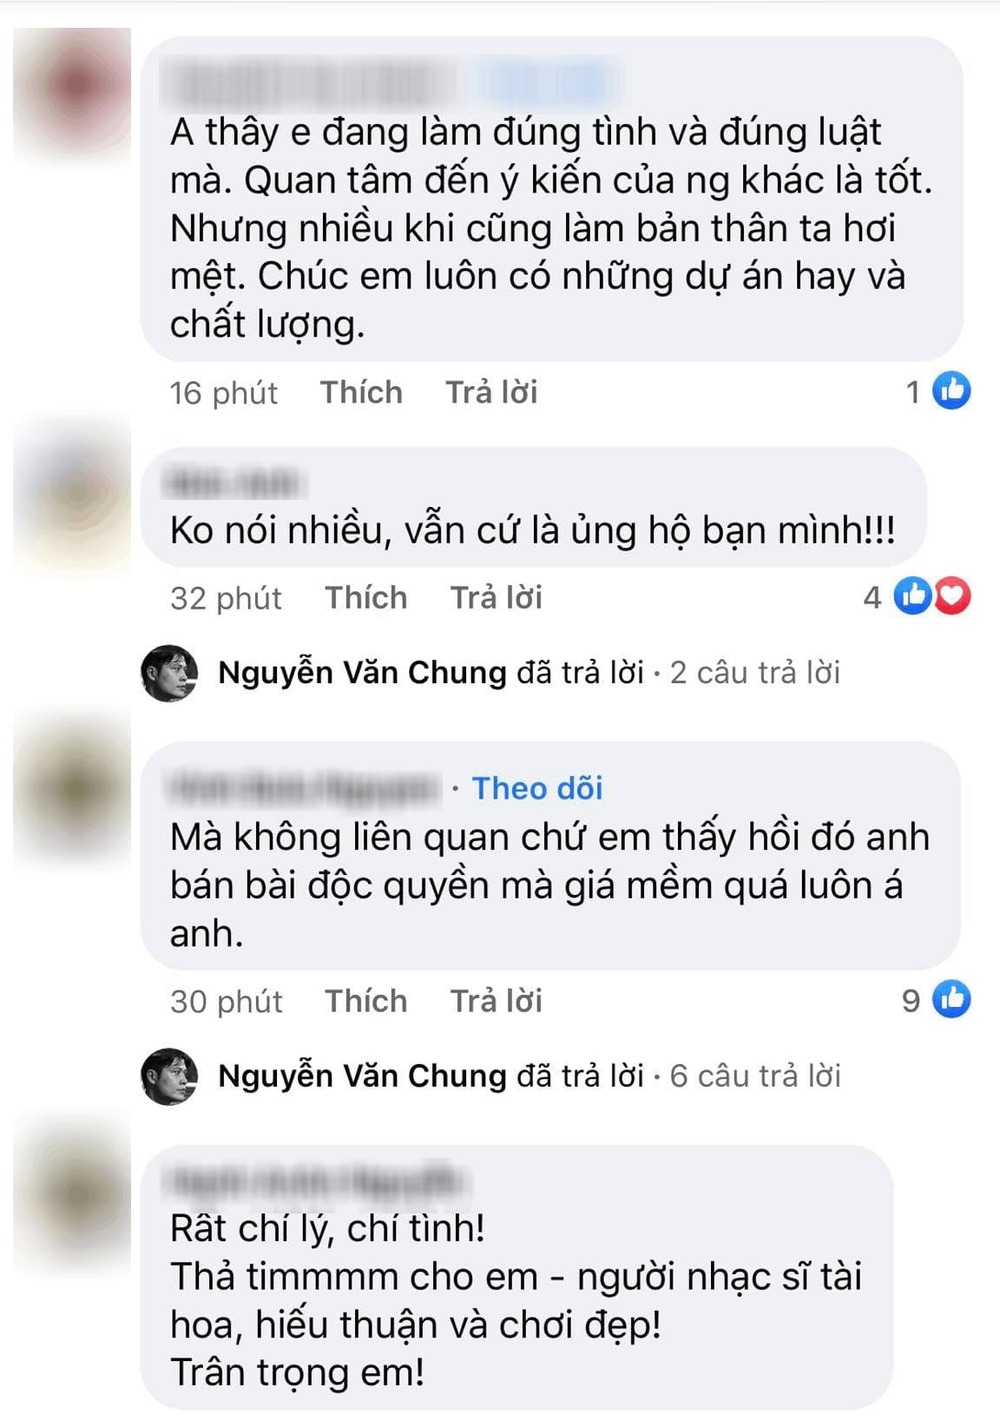  
Khán giả khen ngợi Nguyễn Văn Chung vì hành động ngay thẳng. (Ảnh: Chụp màn hình)